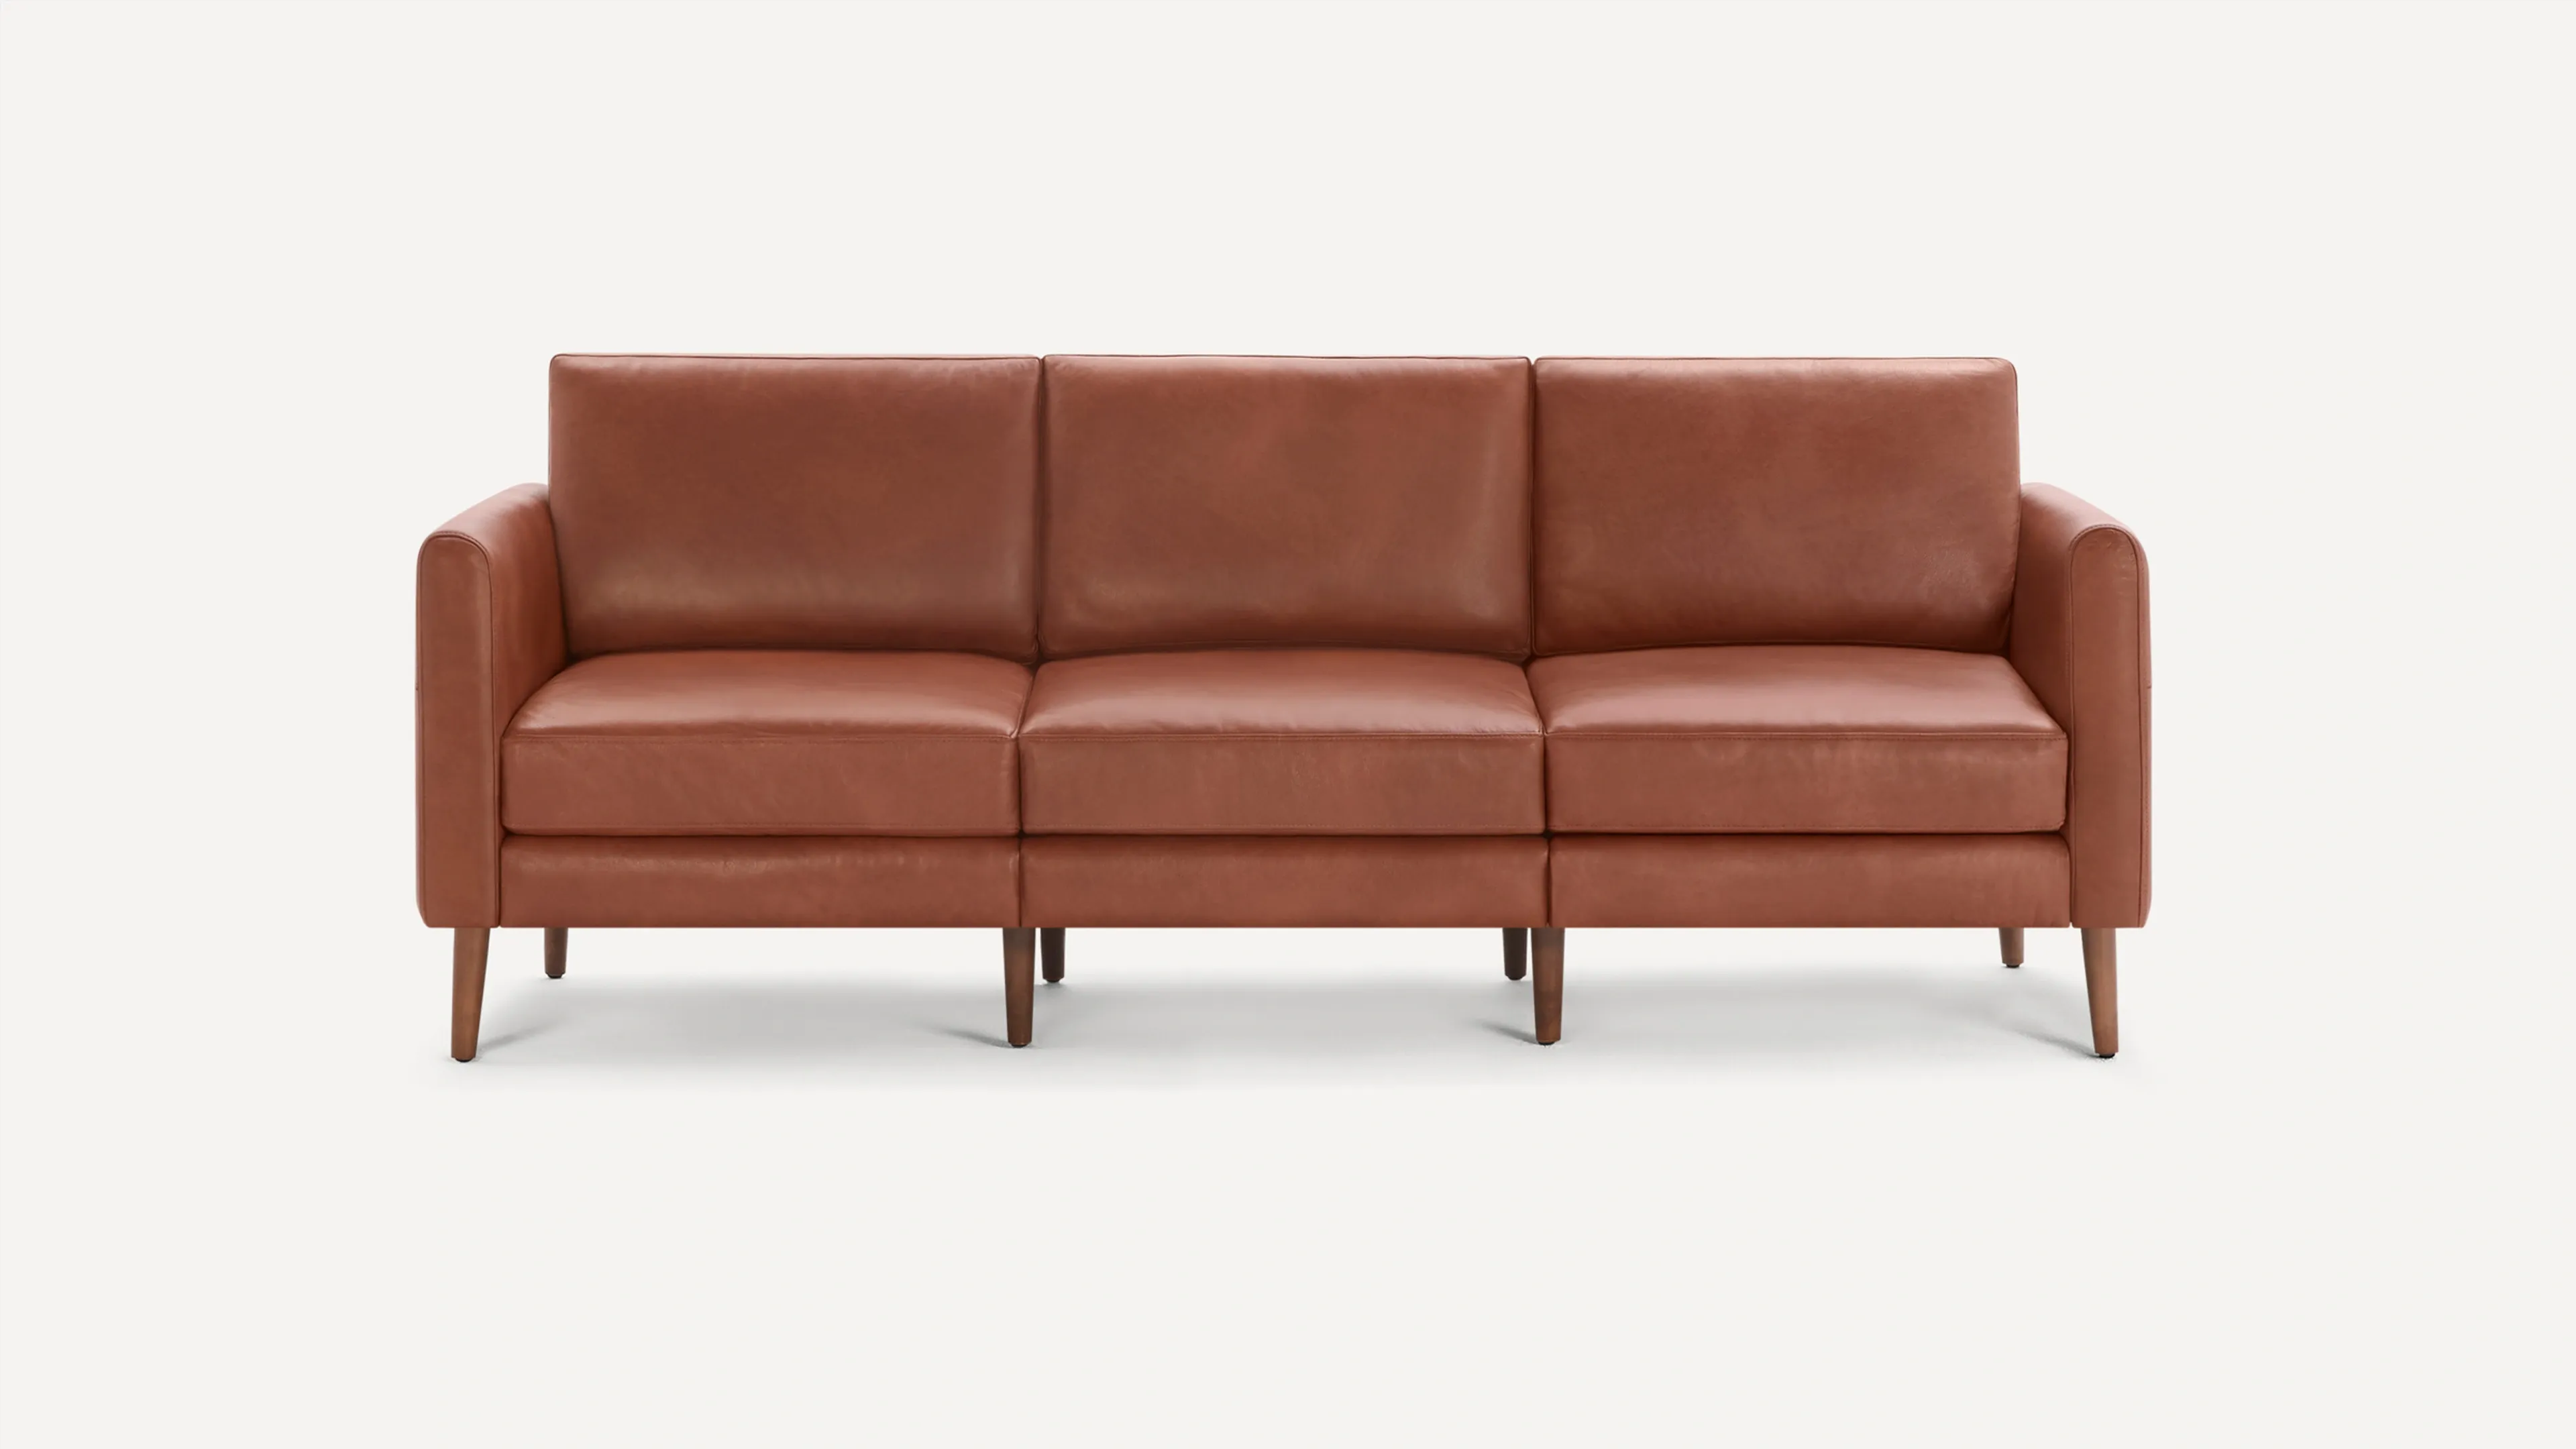 Original Sofa in Chestnut Leather